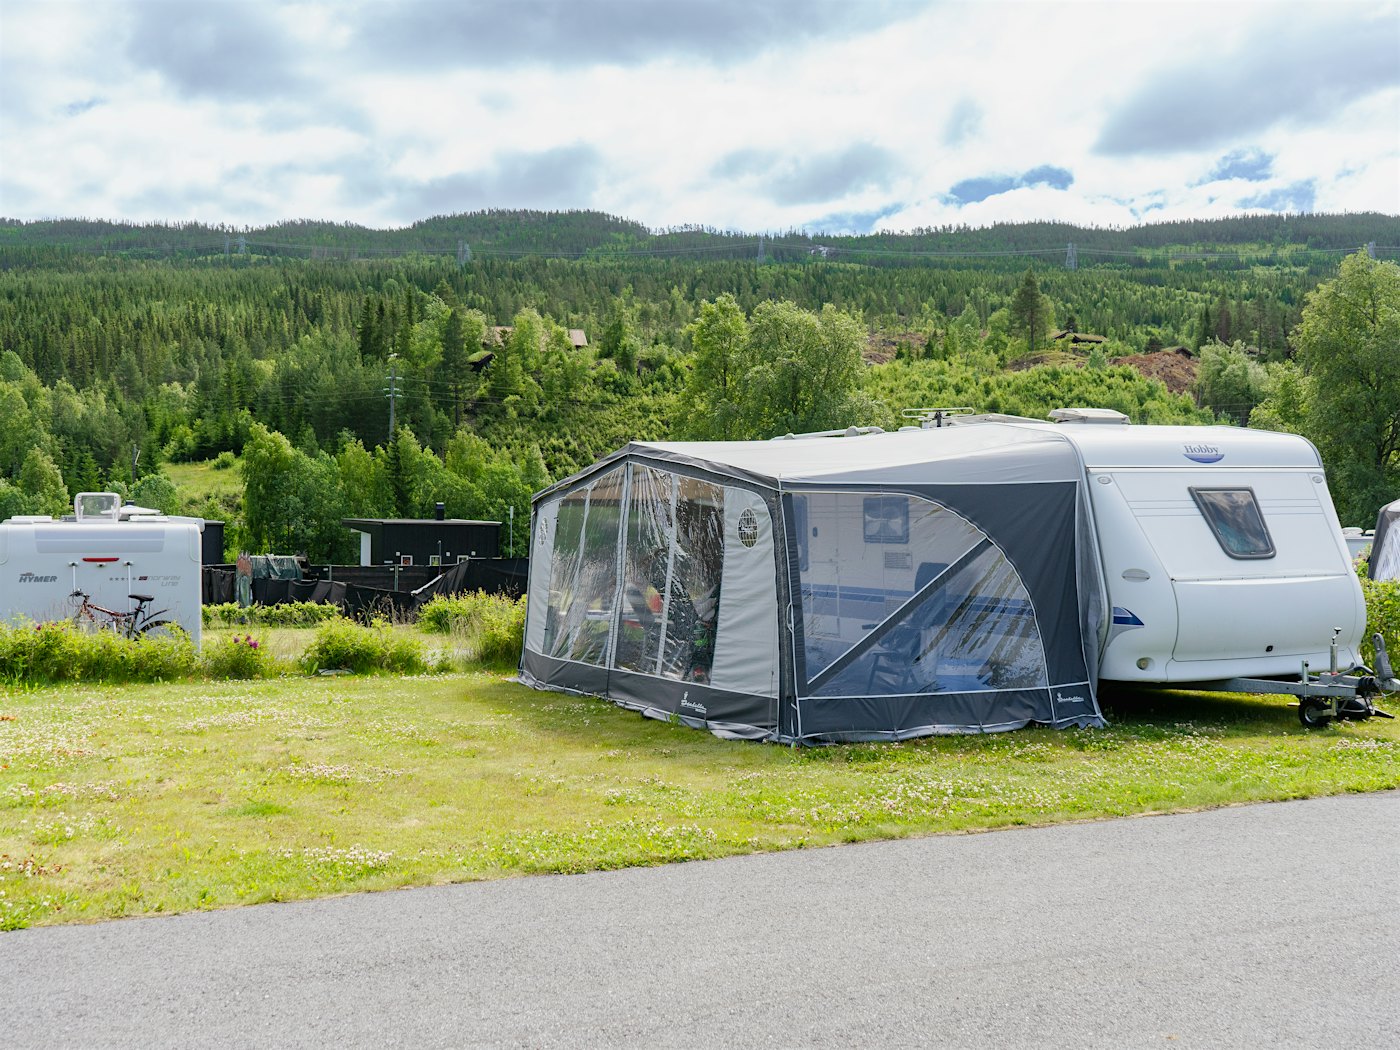 Wohnwagen mit Vorzelt am Campingplatz. Bäume im Hintergrund. Foto